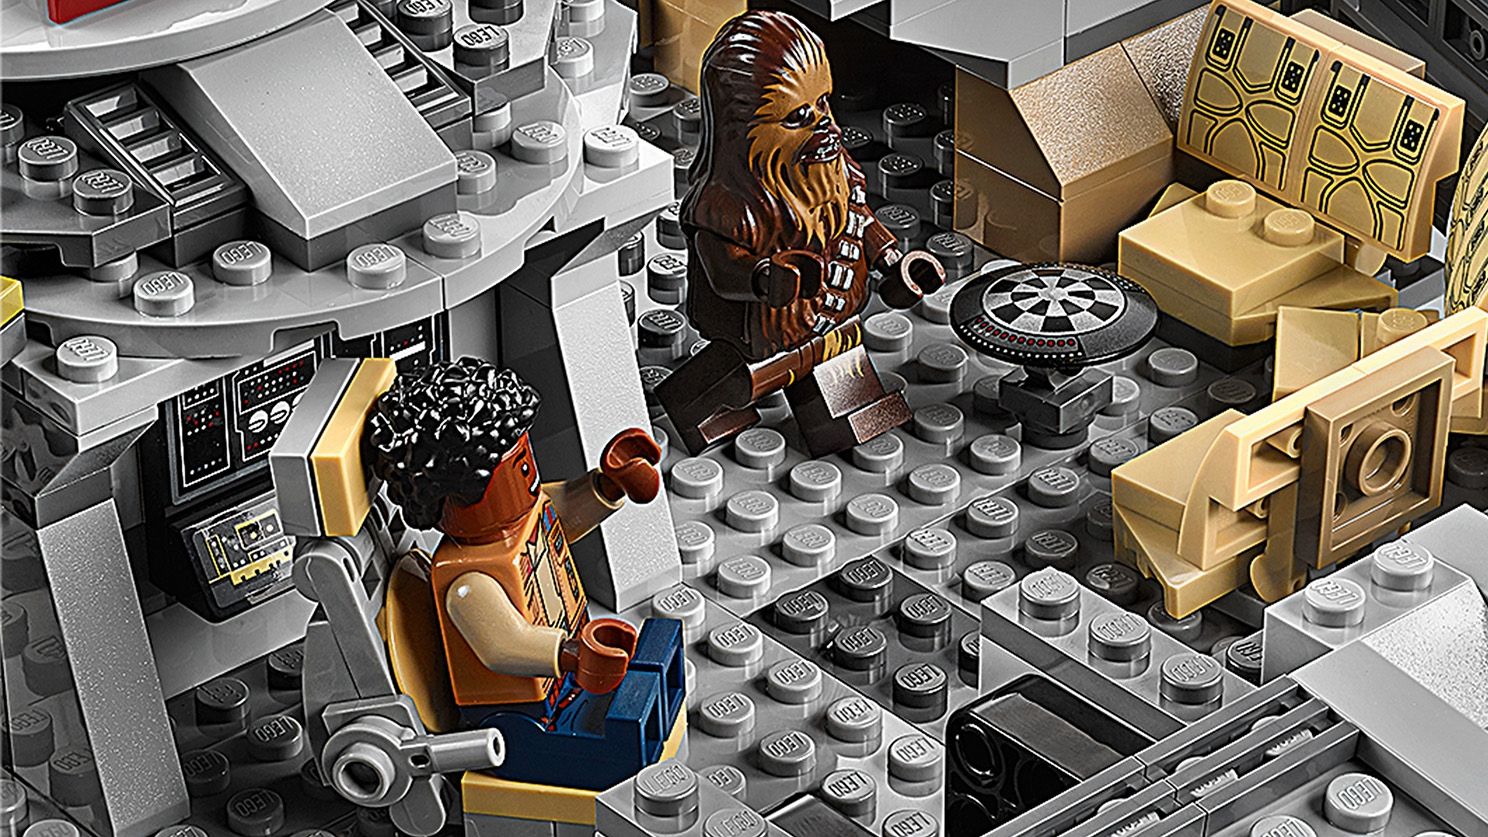 LEGO Star Wars 75257 Millennium Falcon™ LEGO_75257_WEB_SEC02_1488.jpg